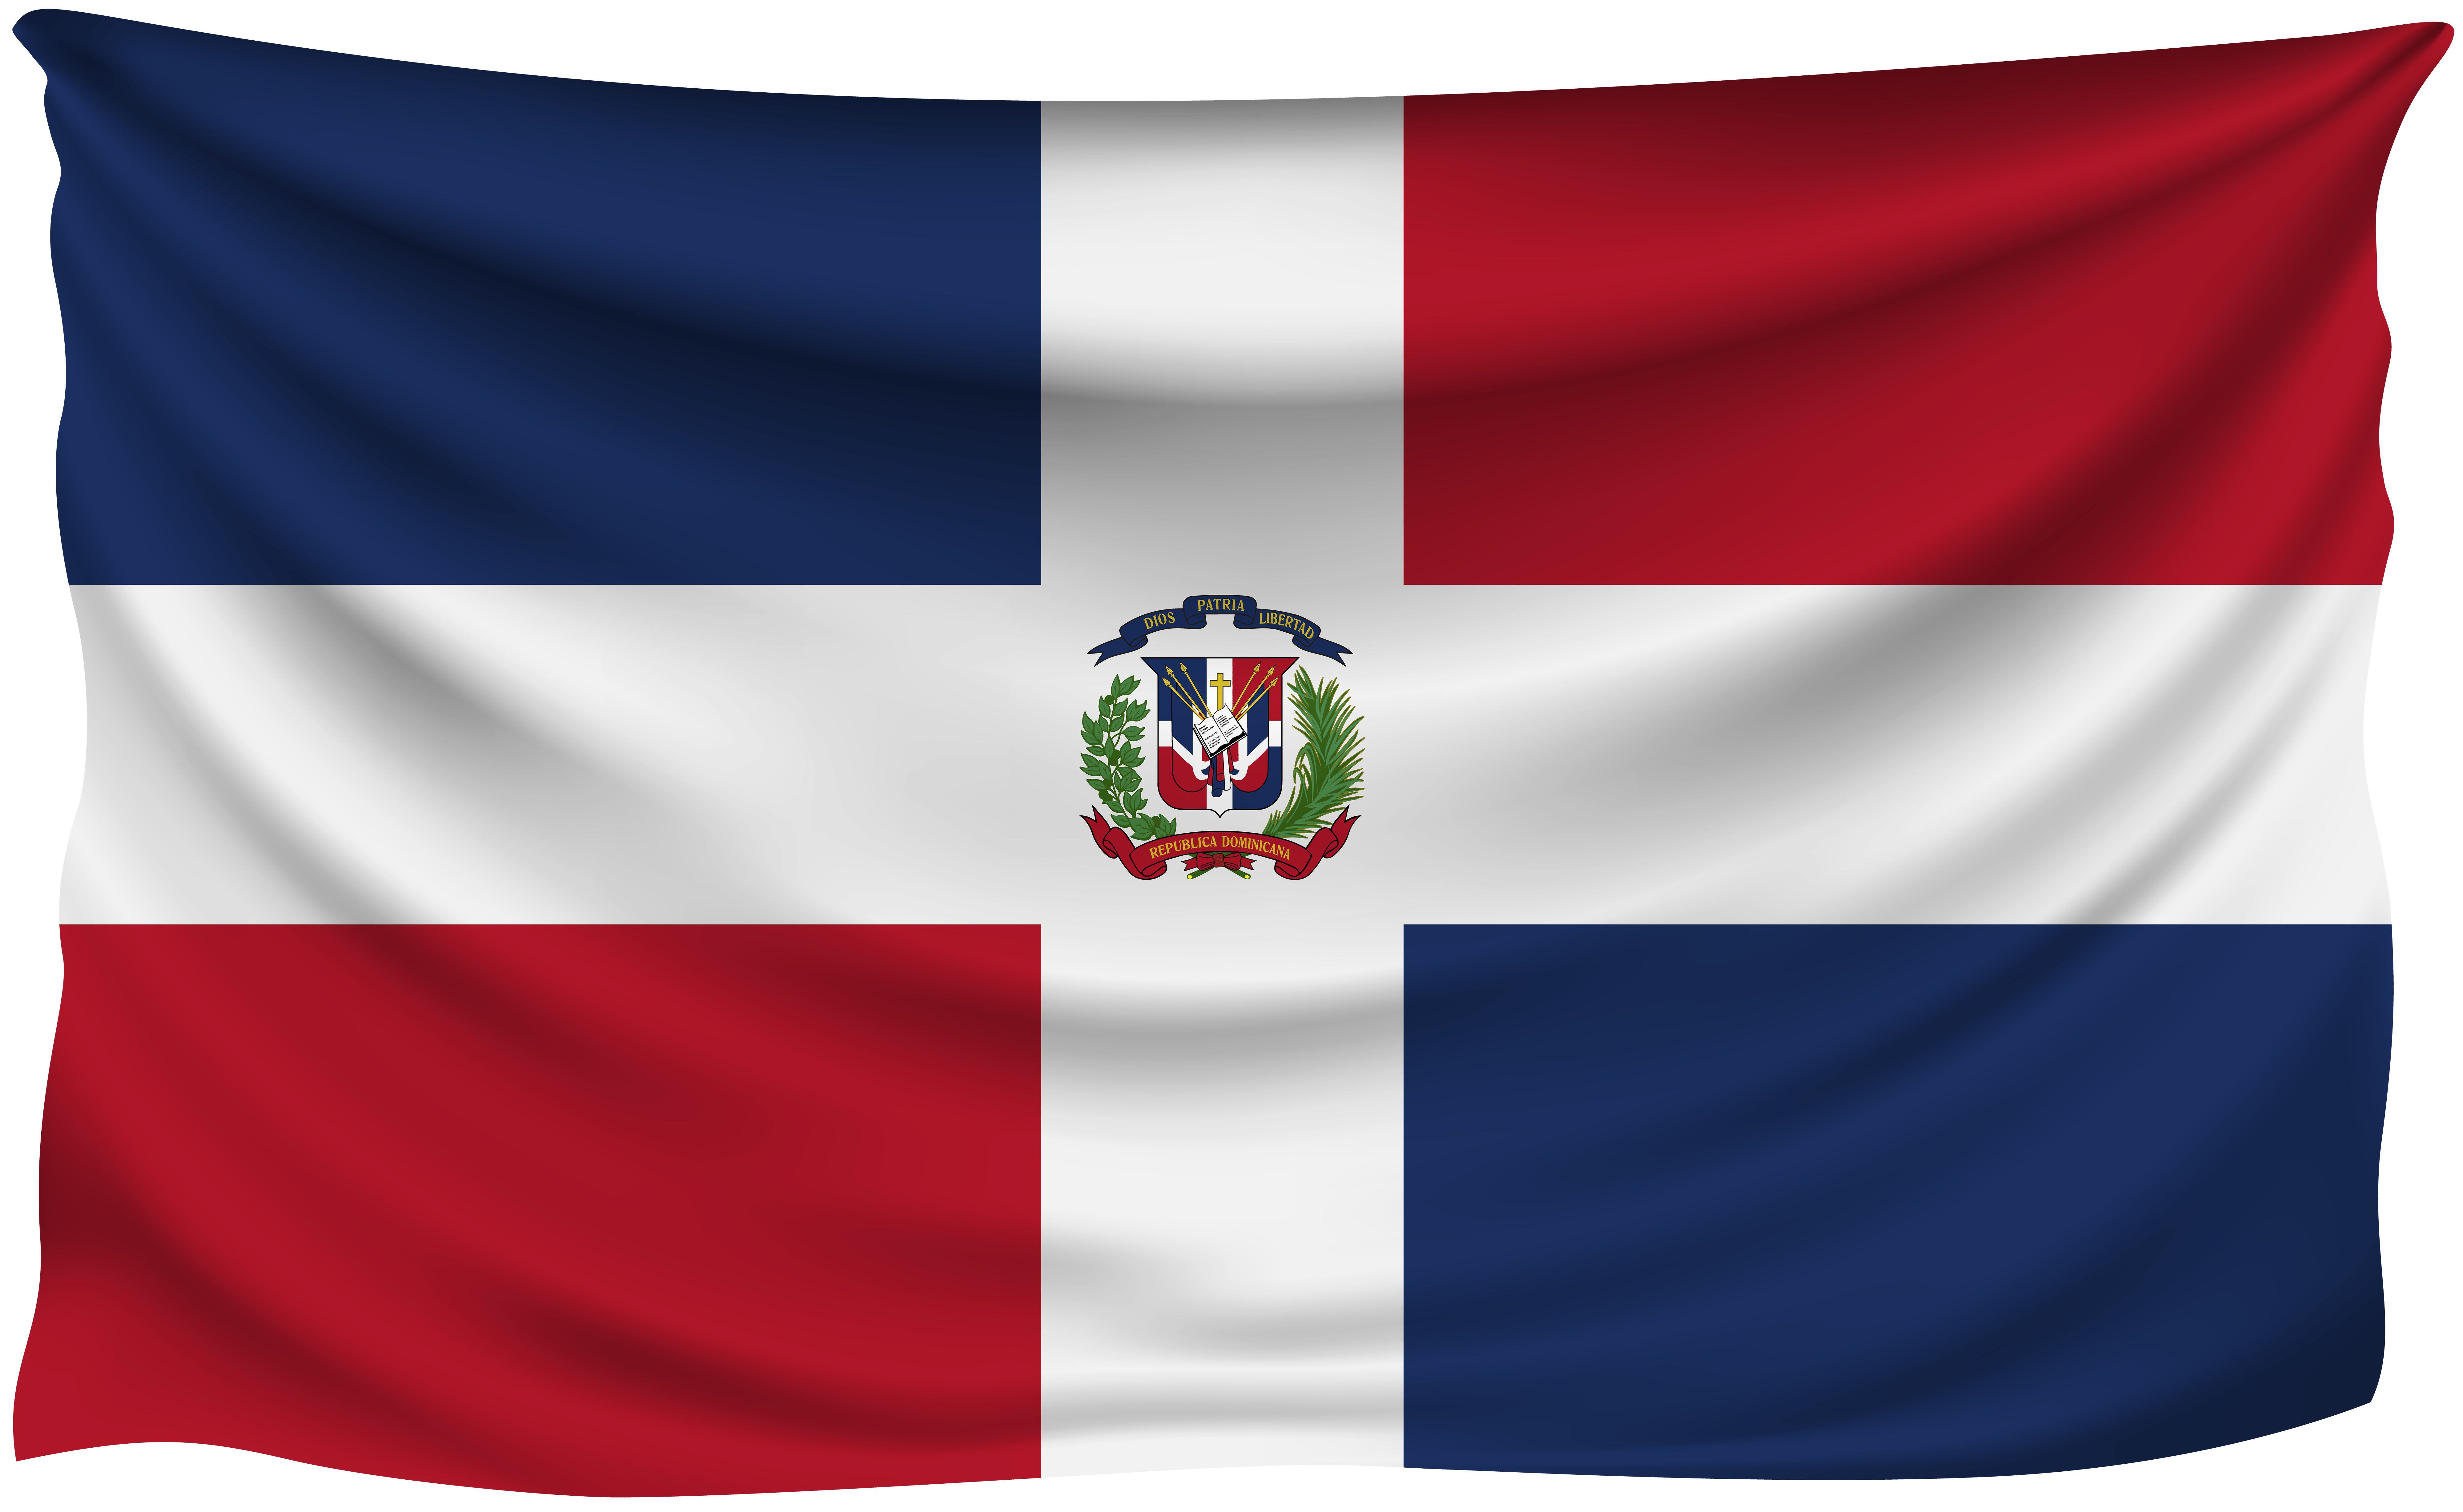 La Republica Dominicana Flag